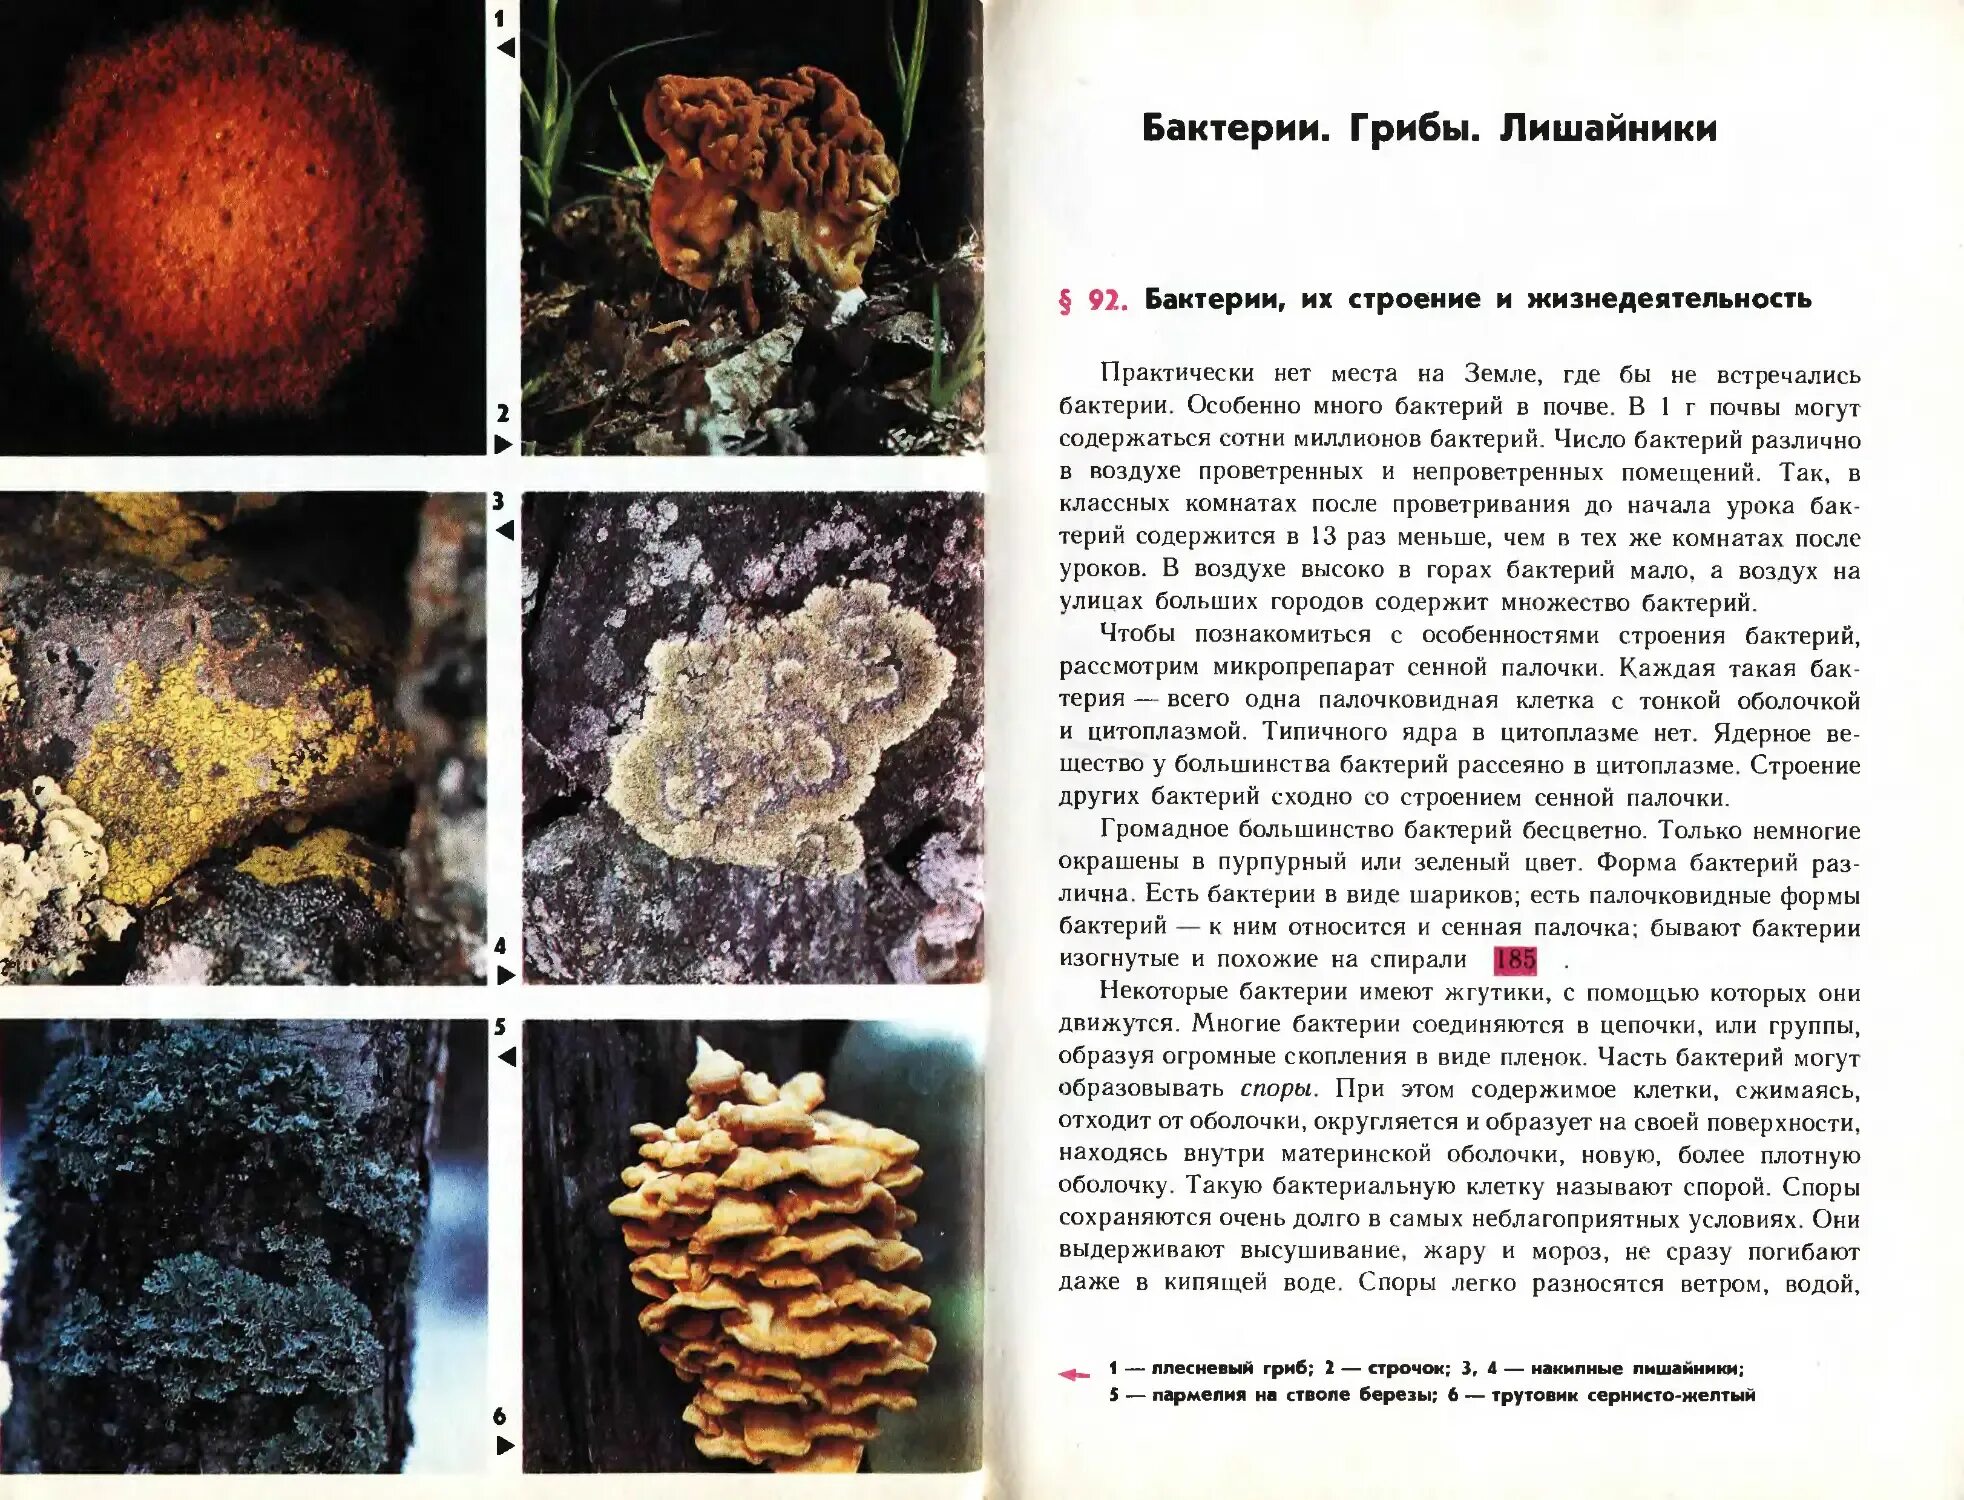 Бактерии грибы лишайники. Грибы и бактерии. Бактерии грибы лишайники таблица. Бактерии грибы лишайники сравнительная таблица. Грибы по сравнению с бактериями